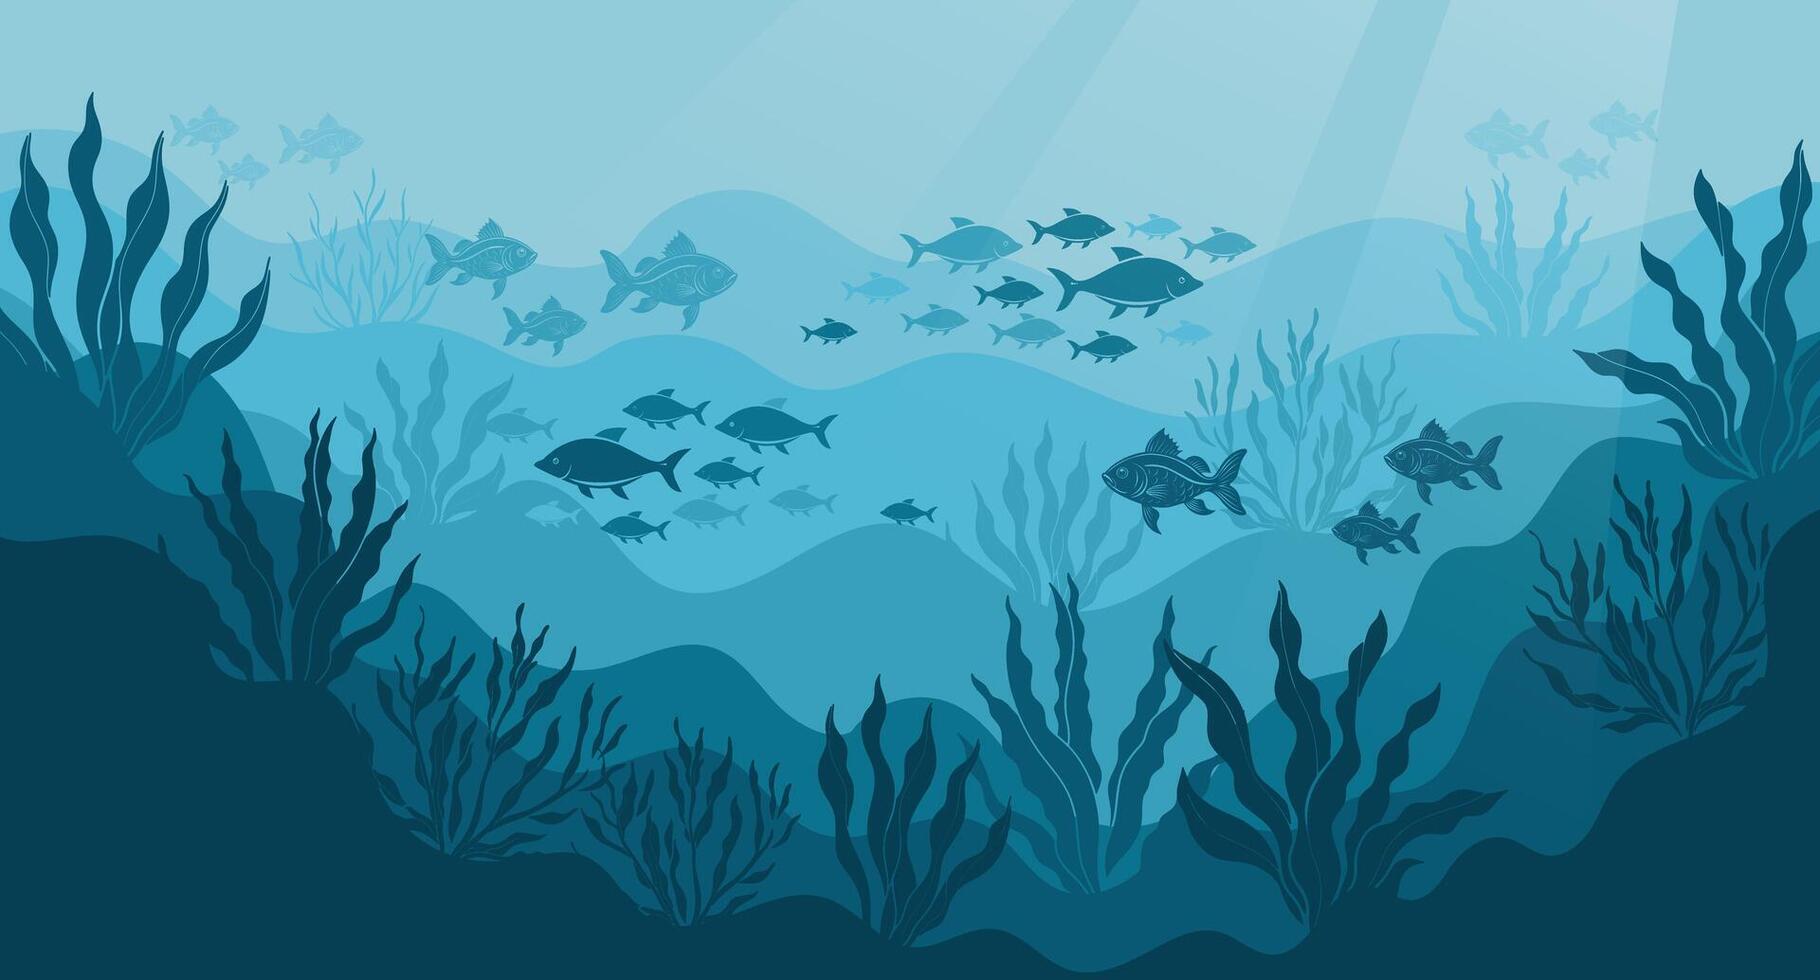 onderwater- oceaan landschap, algen en riffen, silhouet van een school- van vis. zeebedding achtergrond met oceaan flora en fauna, koralen, silhouetten van zee dieren. vector